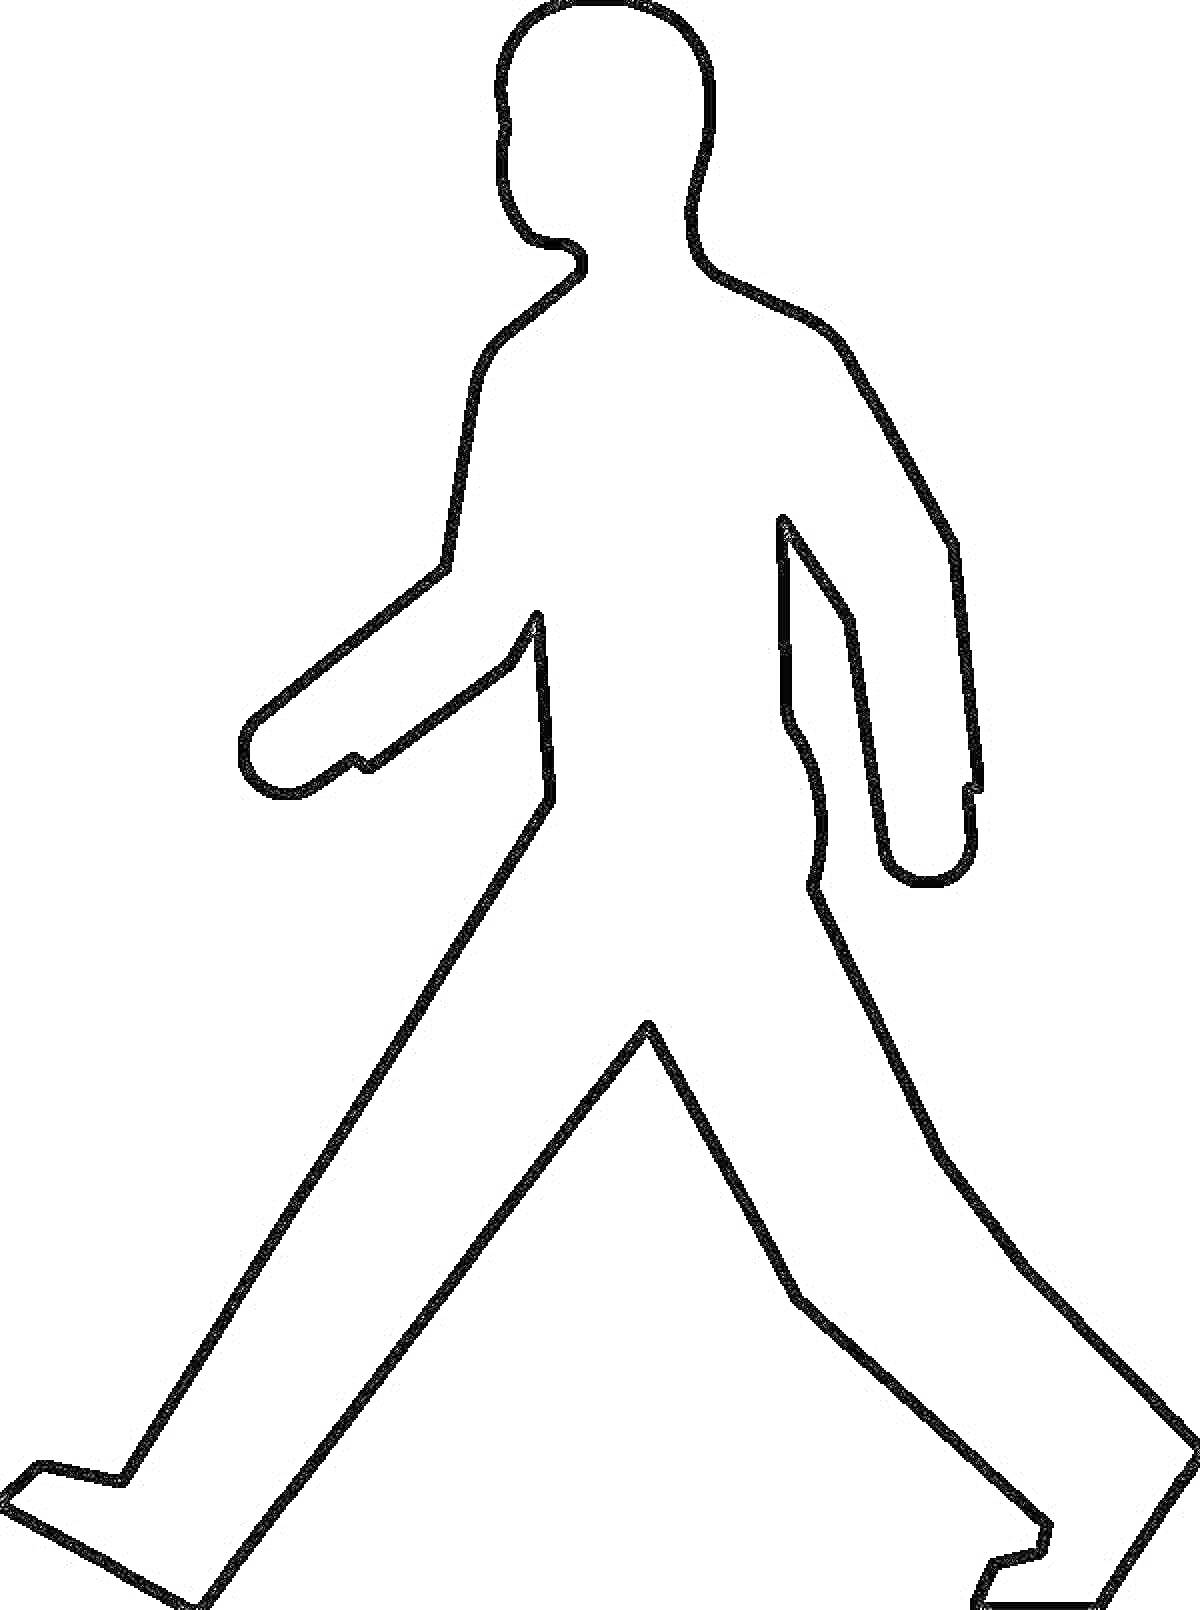 Контур человека, идущего пешком